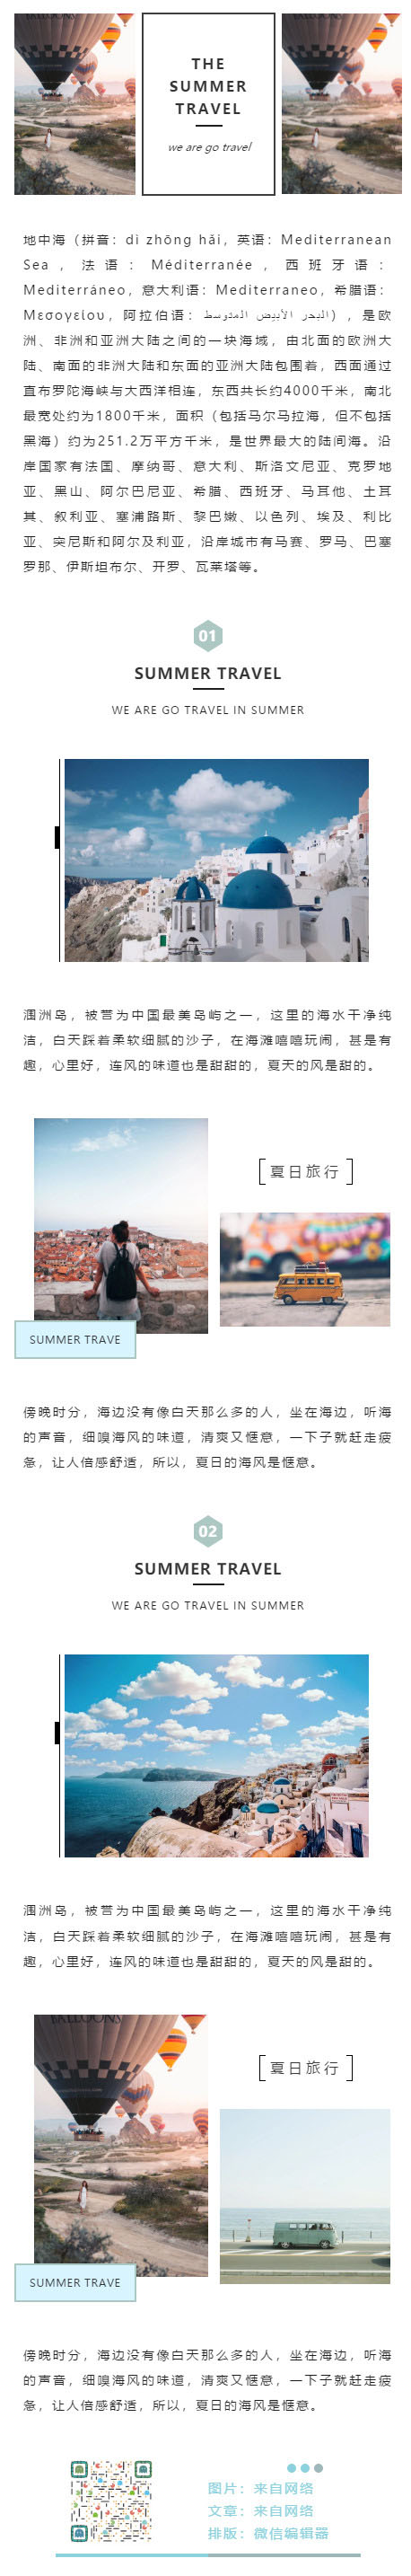 旅游旅行地中海蓝天白云海边沙滩微信公众平台图文模板推文素材